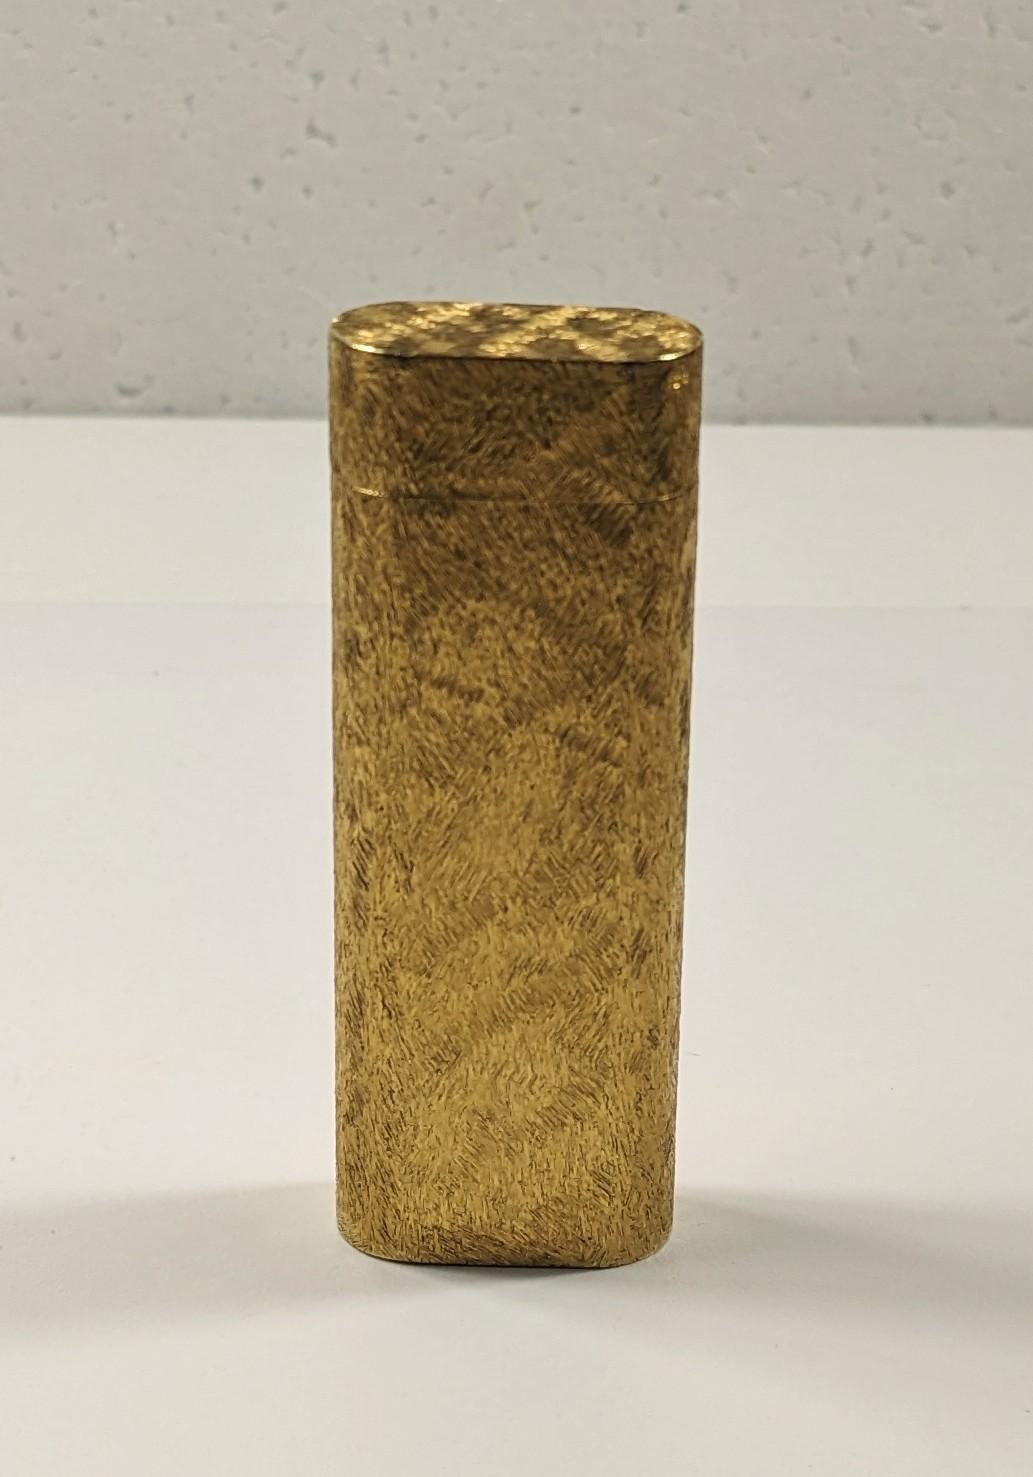  Cartier Gold Plate Feuerzeug Paris 822777, ovaler Querschnitt mit Mineralstruktur Dekor

Sie hat einen verstellbaren Deckel, in dem der in der Schweiz hergestellte Mechanismus untergebracht ist. 
Sie ist sowohl auf dem Deckel als auch auf dem Boden